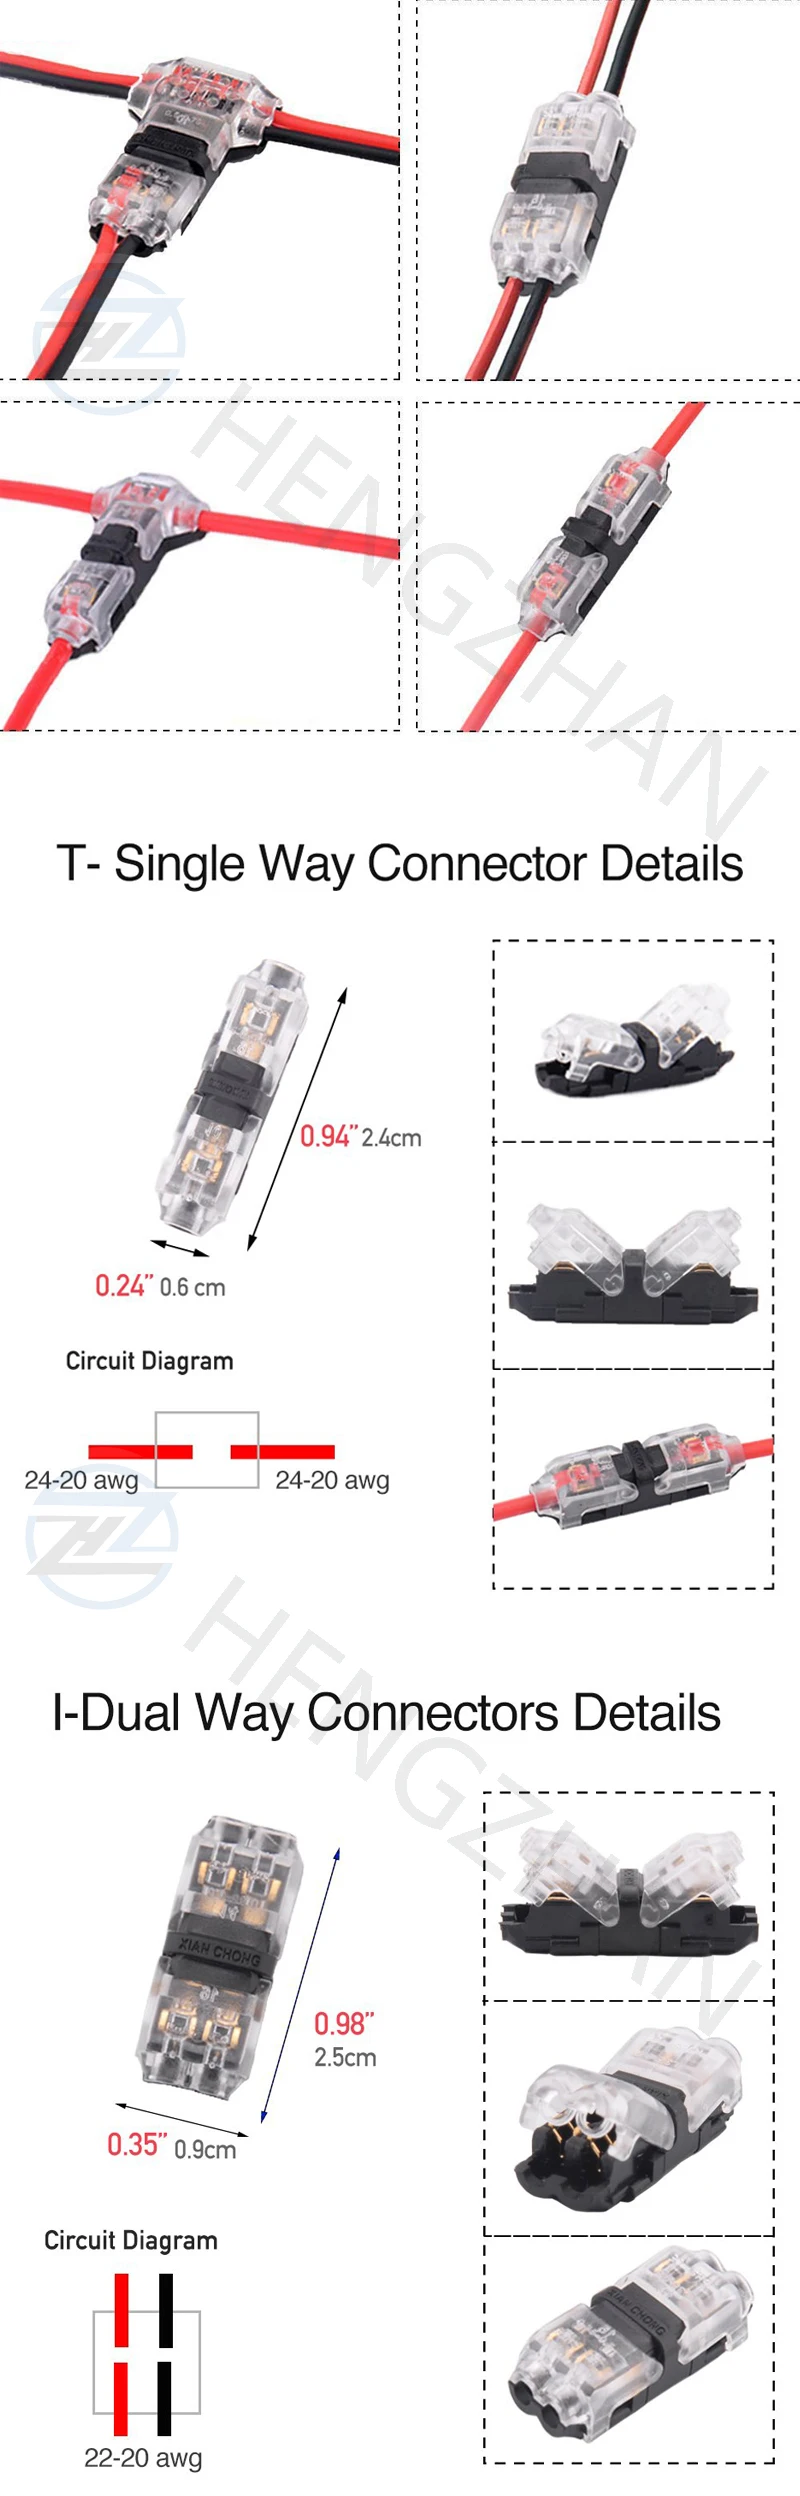 Cavo connettore 2 pin 2 vie universale Compact Wire T Tap connettori rapida Splice filo terminali Stripping free connettore elettrico 5PCS 